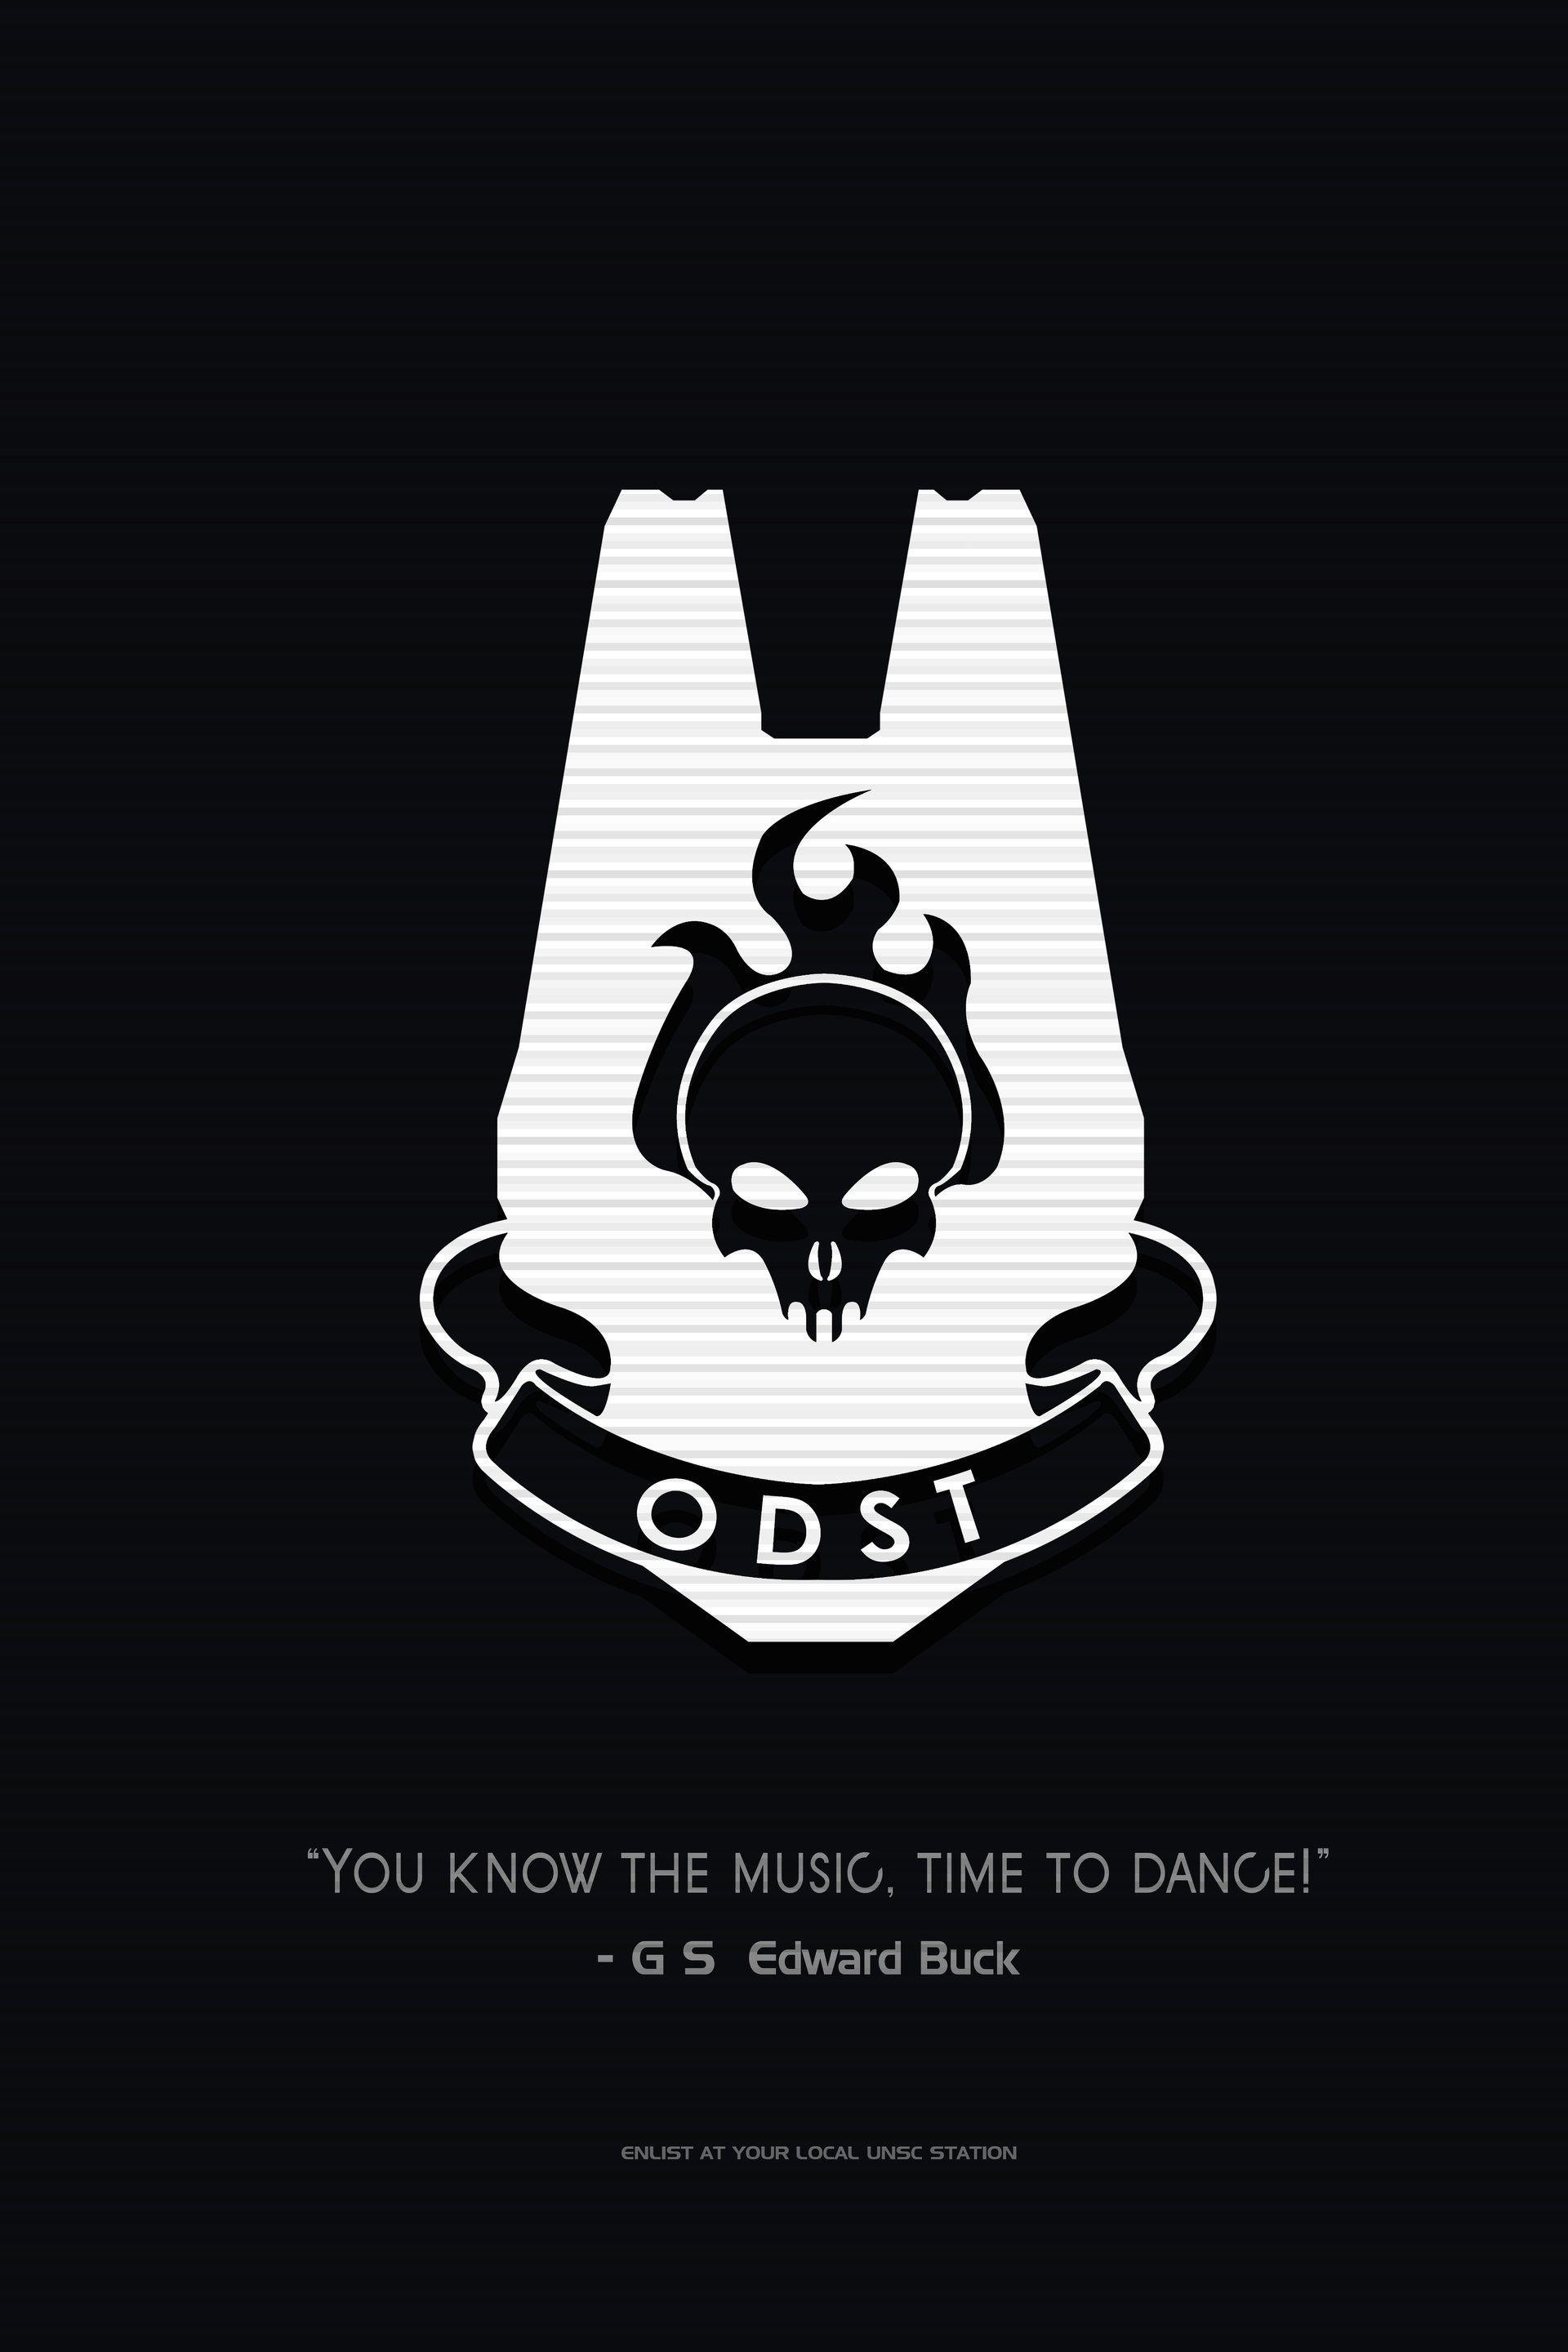 Blue and White ODST Logo - ArtStation - ODST Poster, Kieran Baker